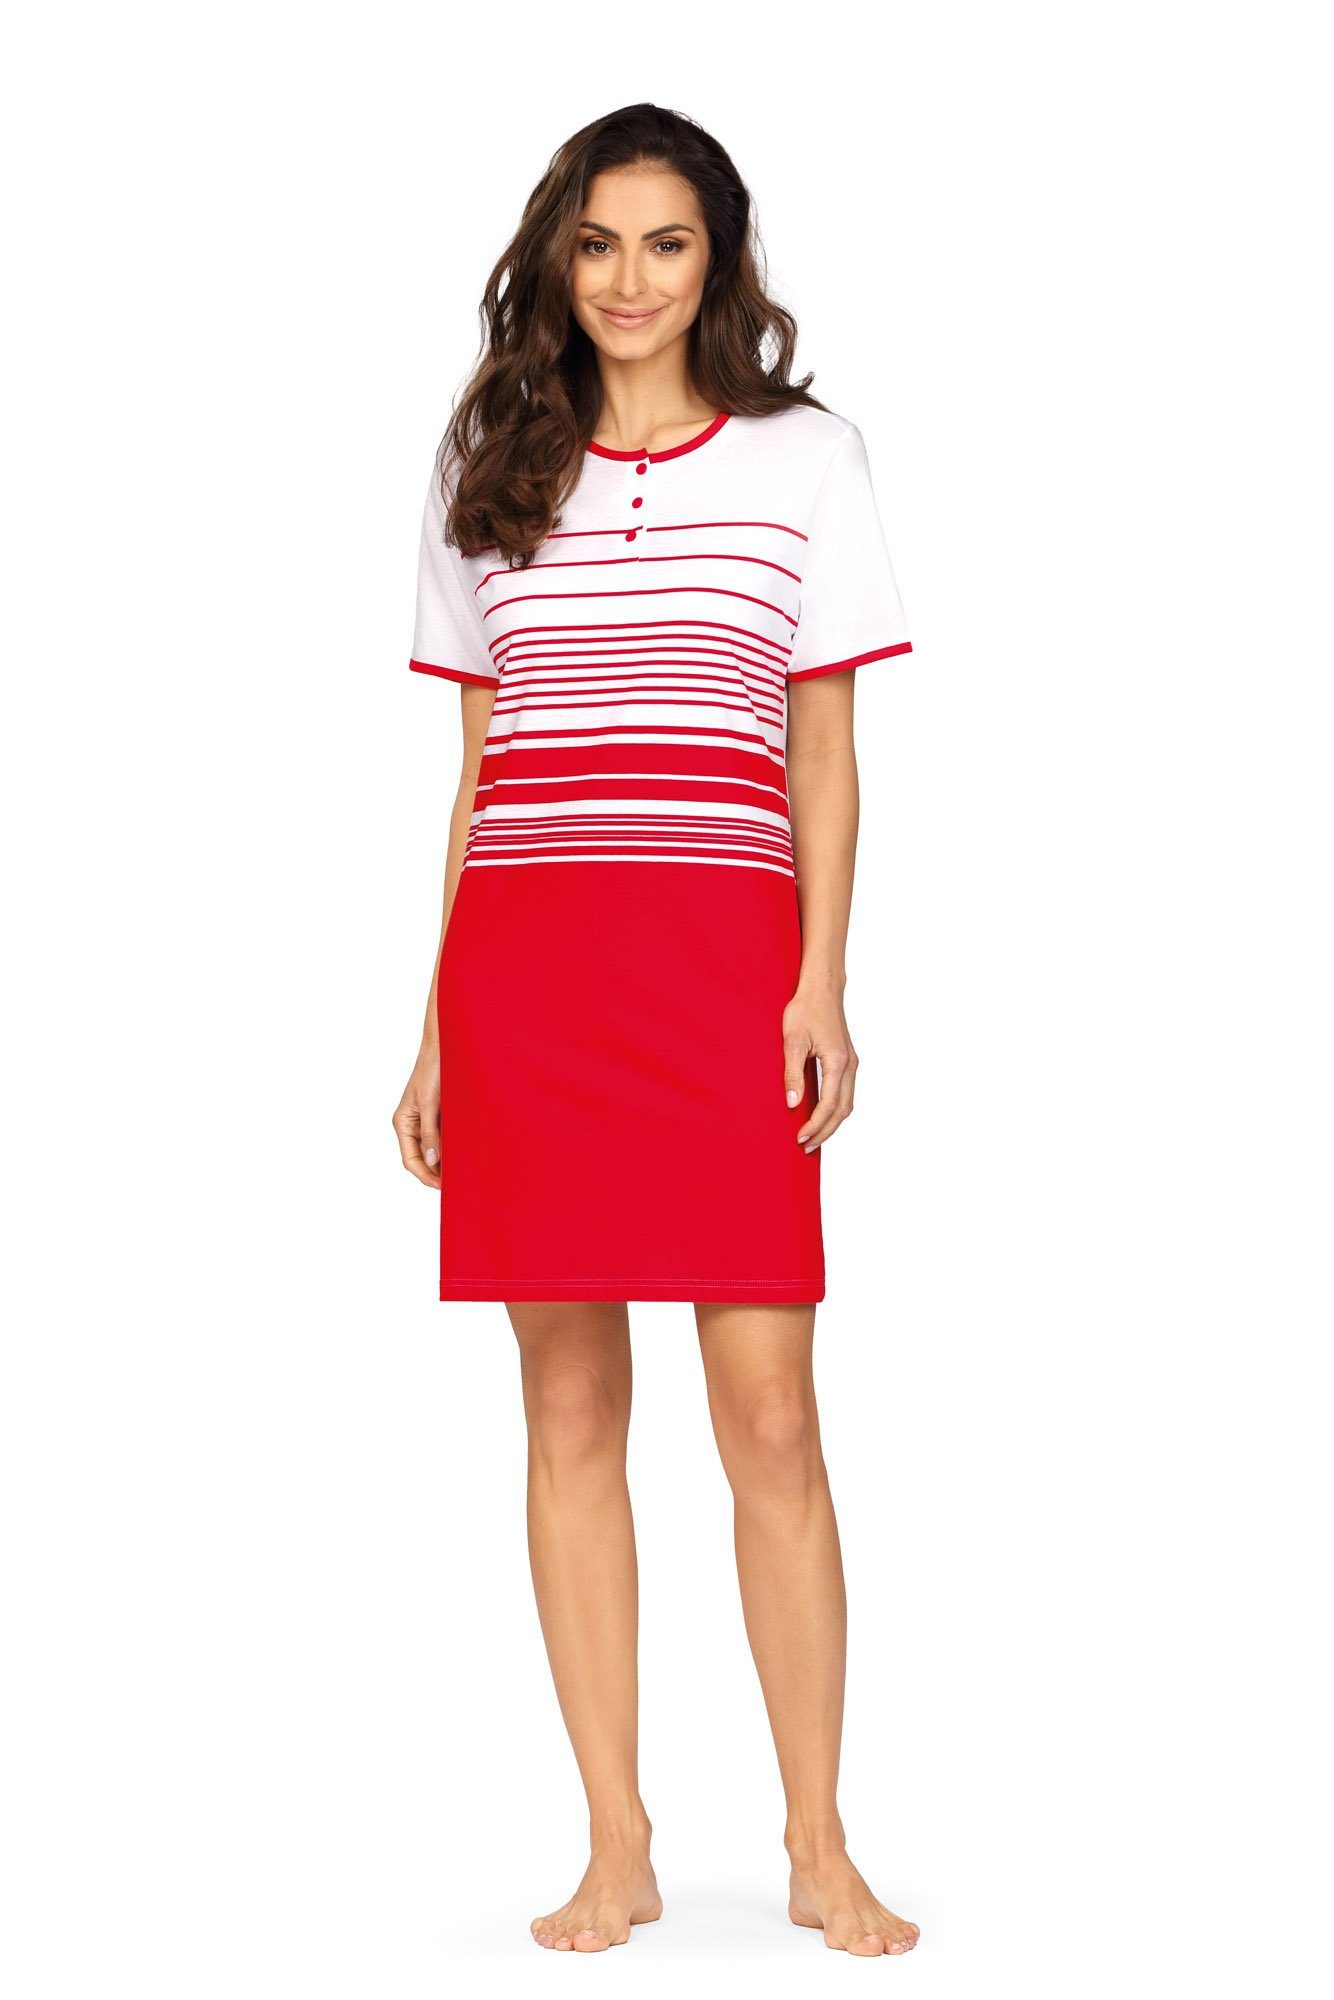 comtessa Nachthemd (Set, 1-tlg., ca.90cm Baumwolle Kurzarm Damen Set) rot Maritim-Look Nachthemd Sleepshirt